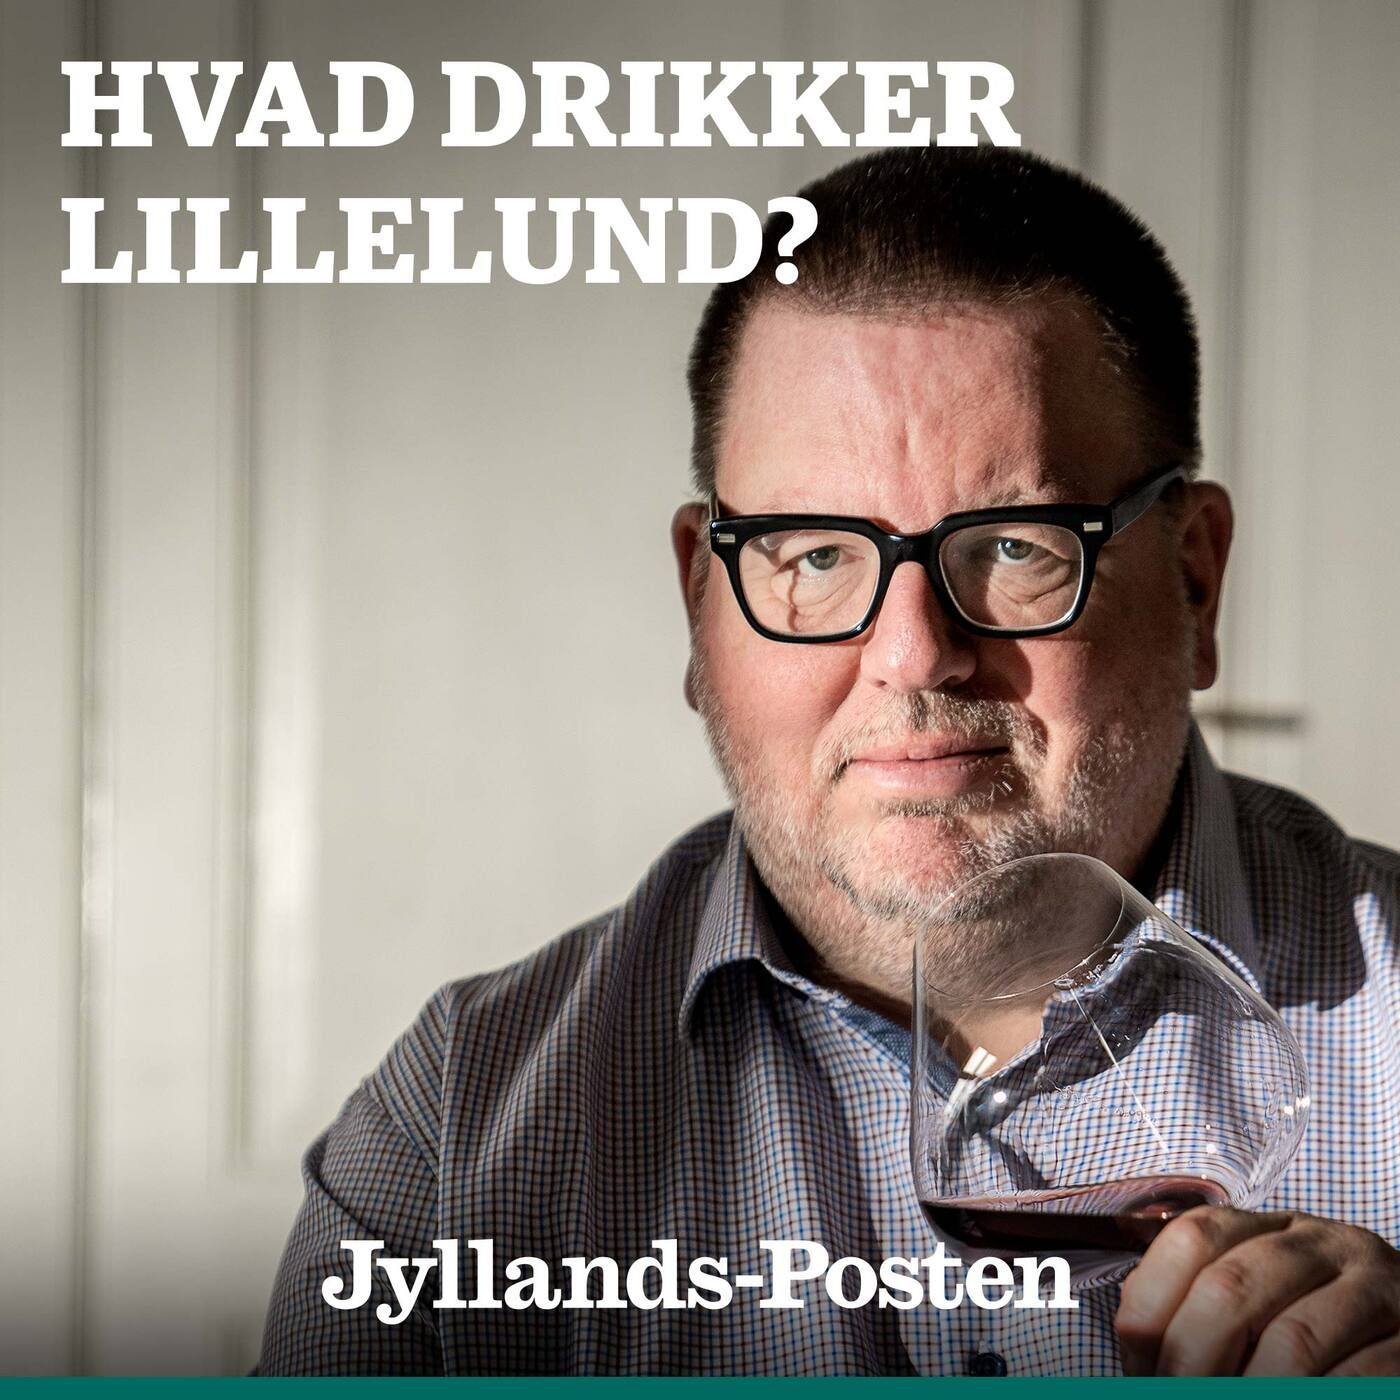 32: Hjerne-Madsen besøger Lillelund: Den lange rejse hjem